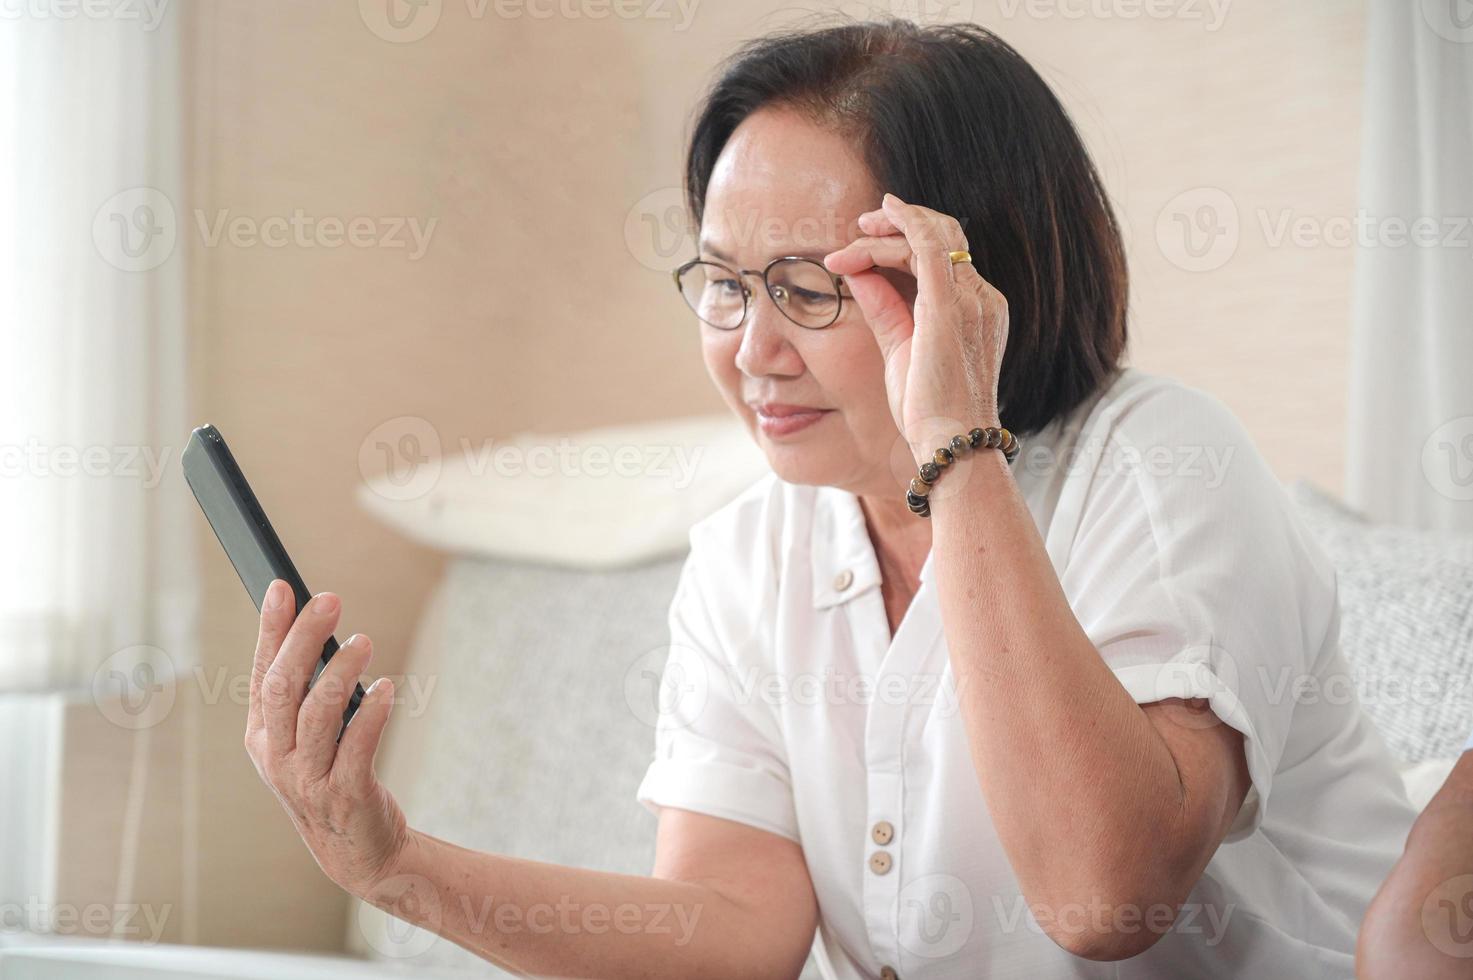 oudere aziatische vrouw die op de bank zit, belt een videogesprek op een smartphone. de andere hand pakt de bril. foto